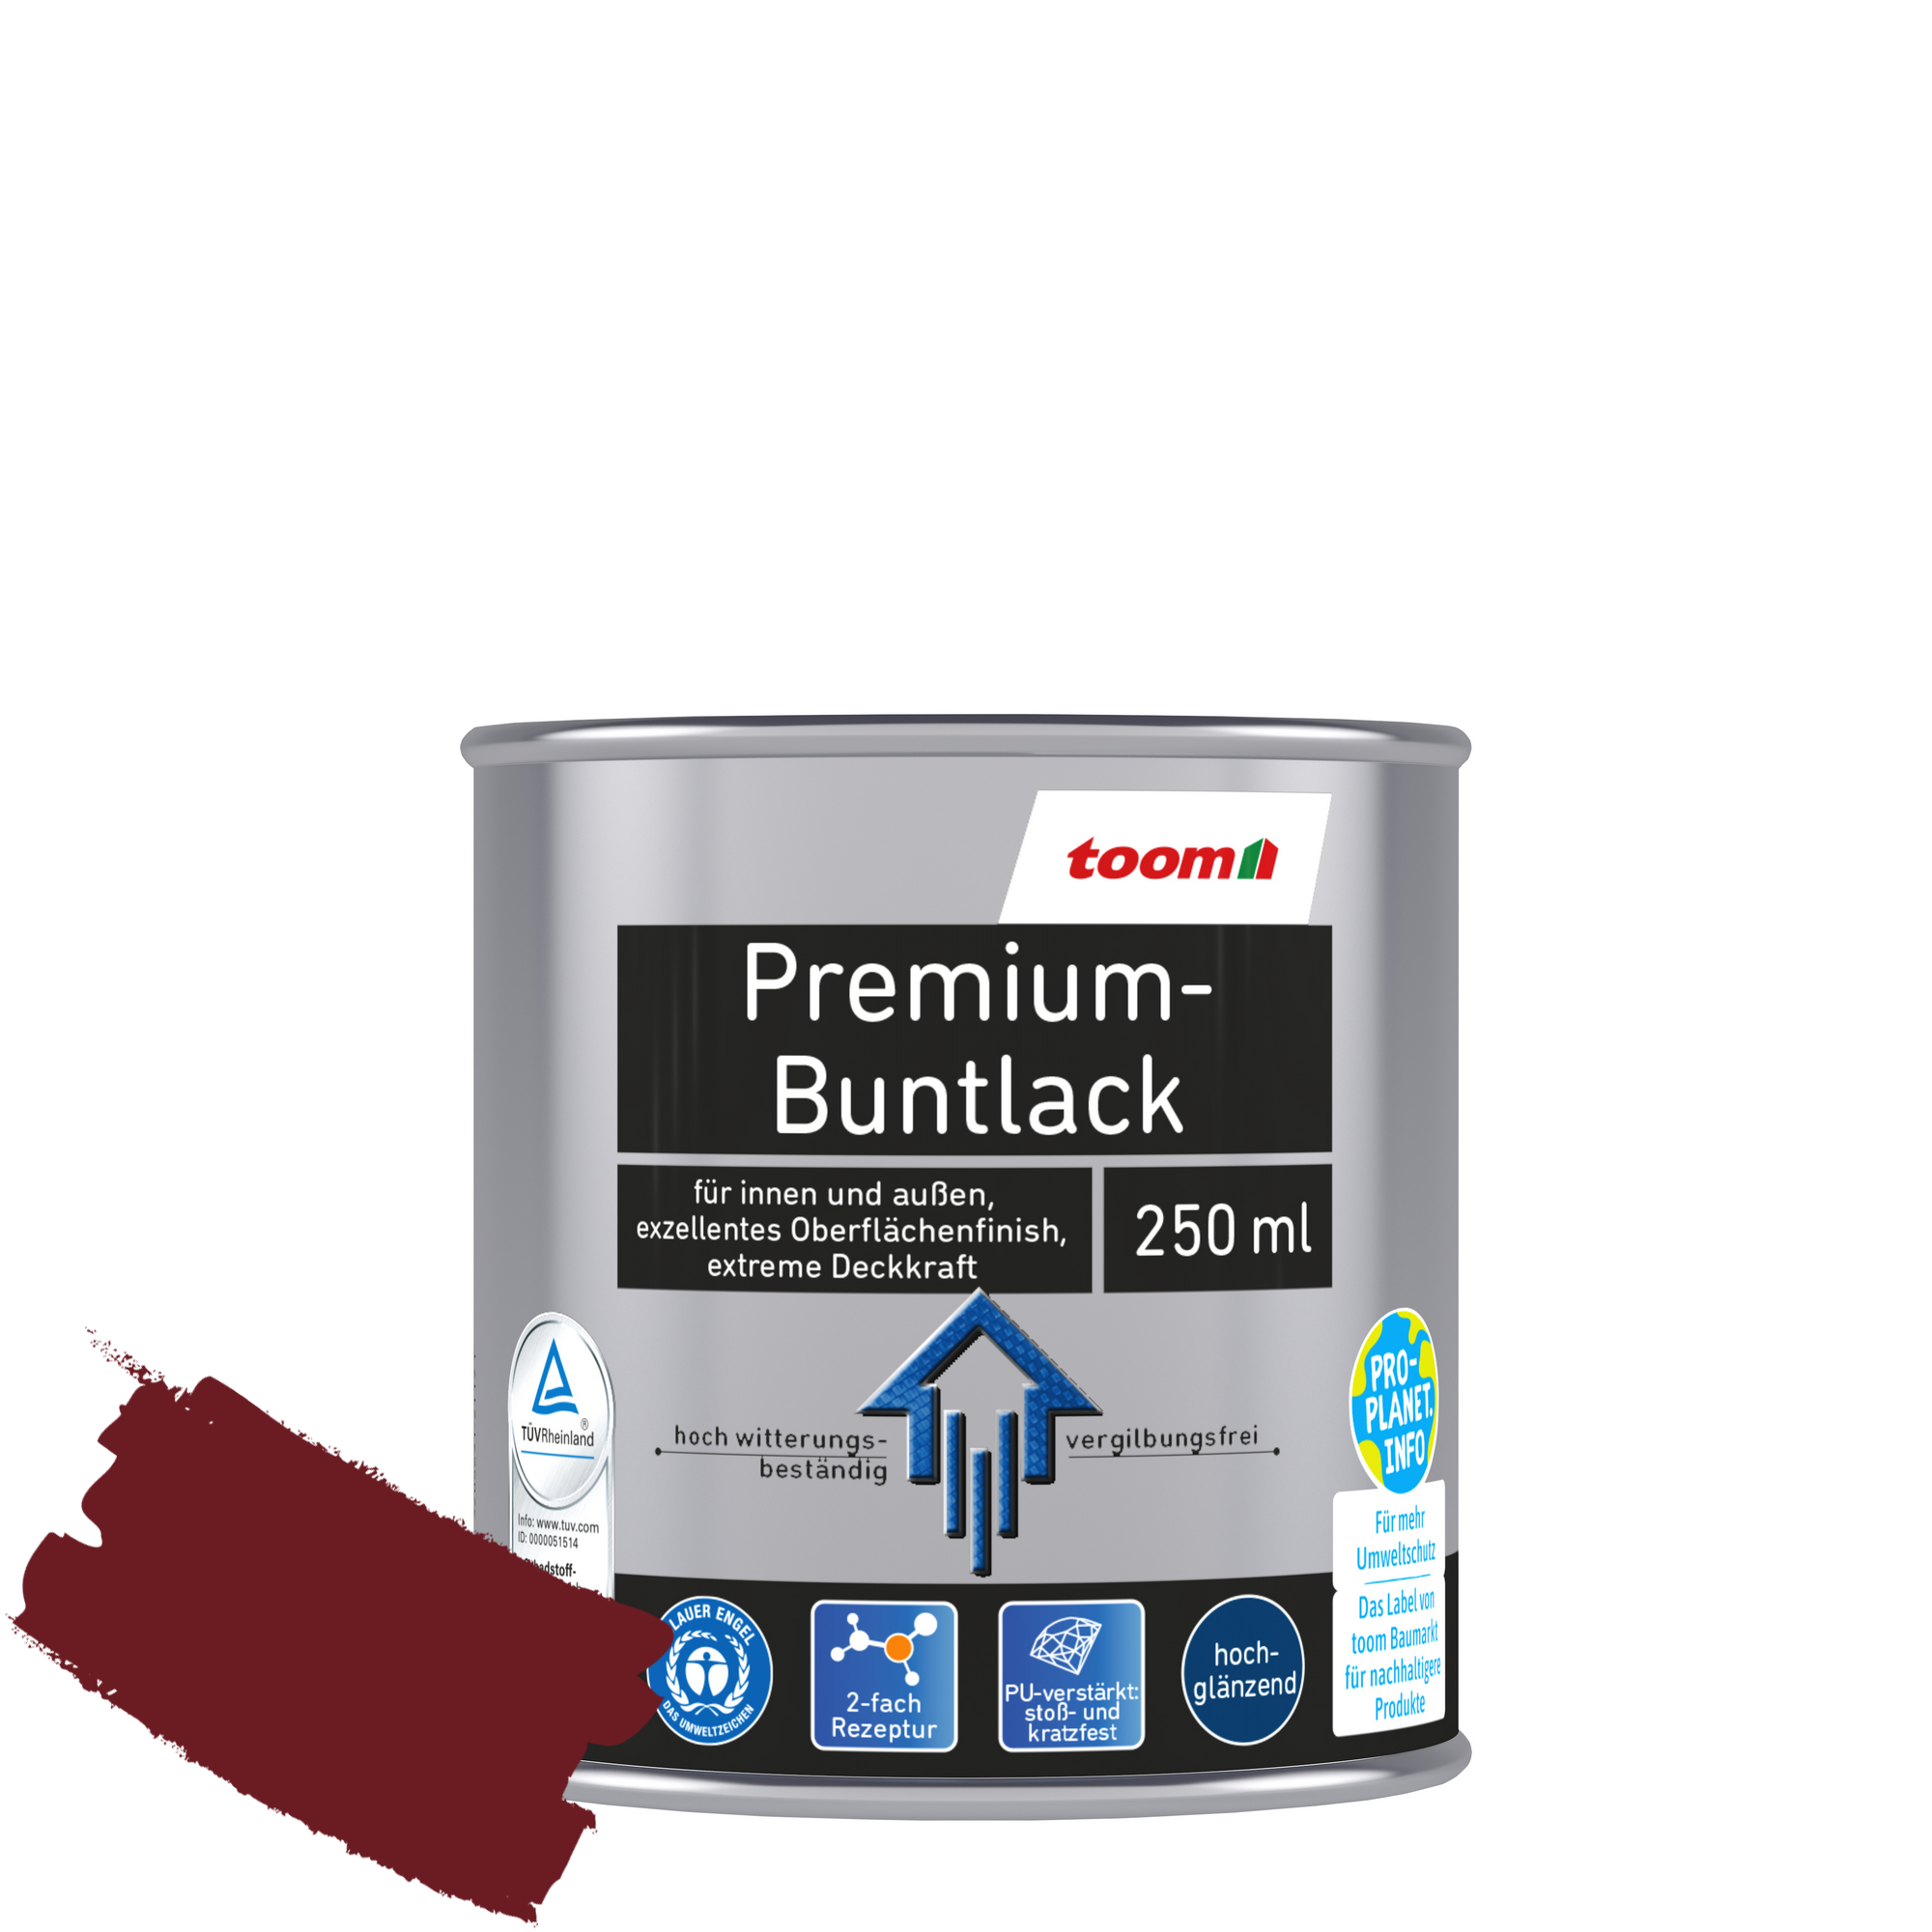 Premium-Buntlack purpurrot glänzend 250 ml + product picture